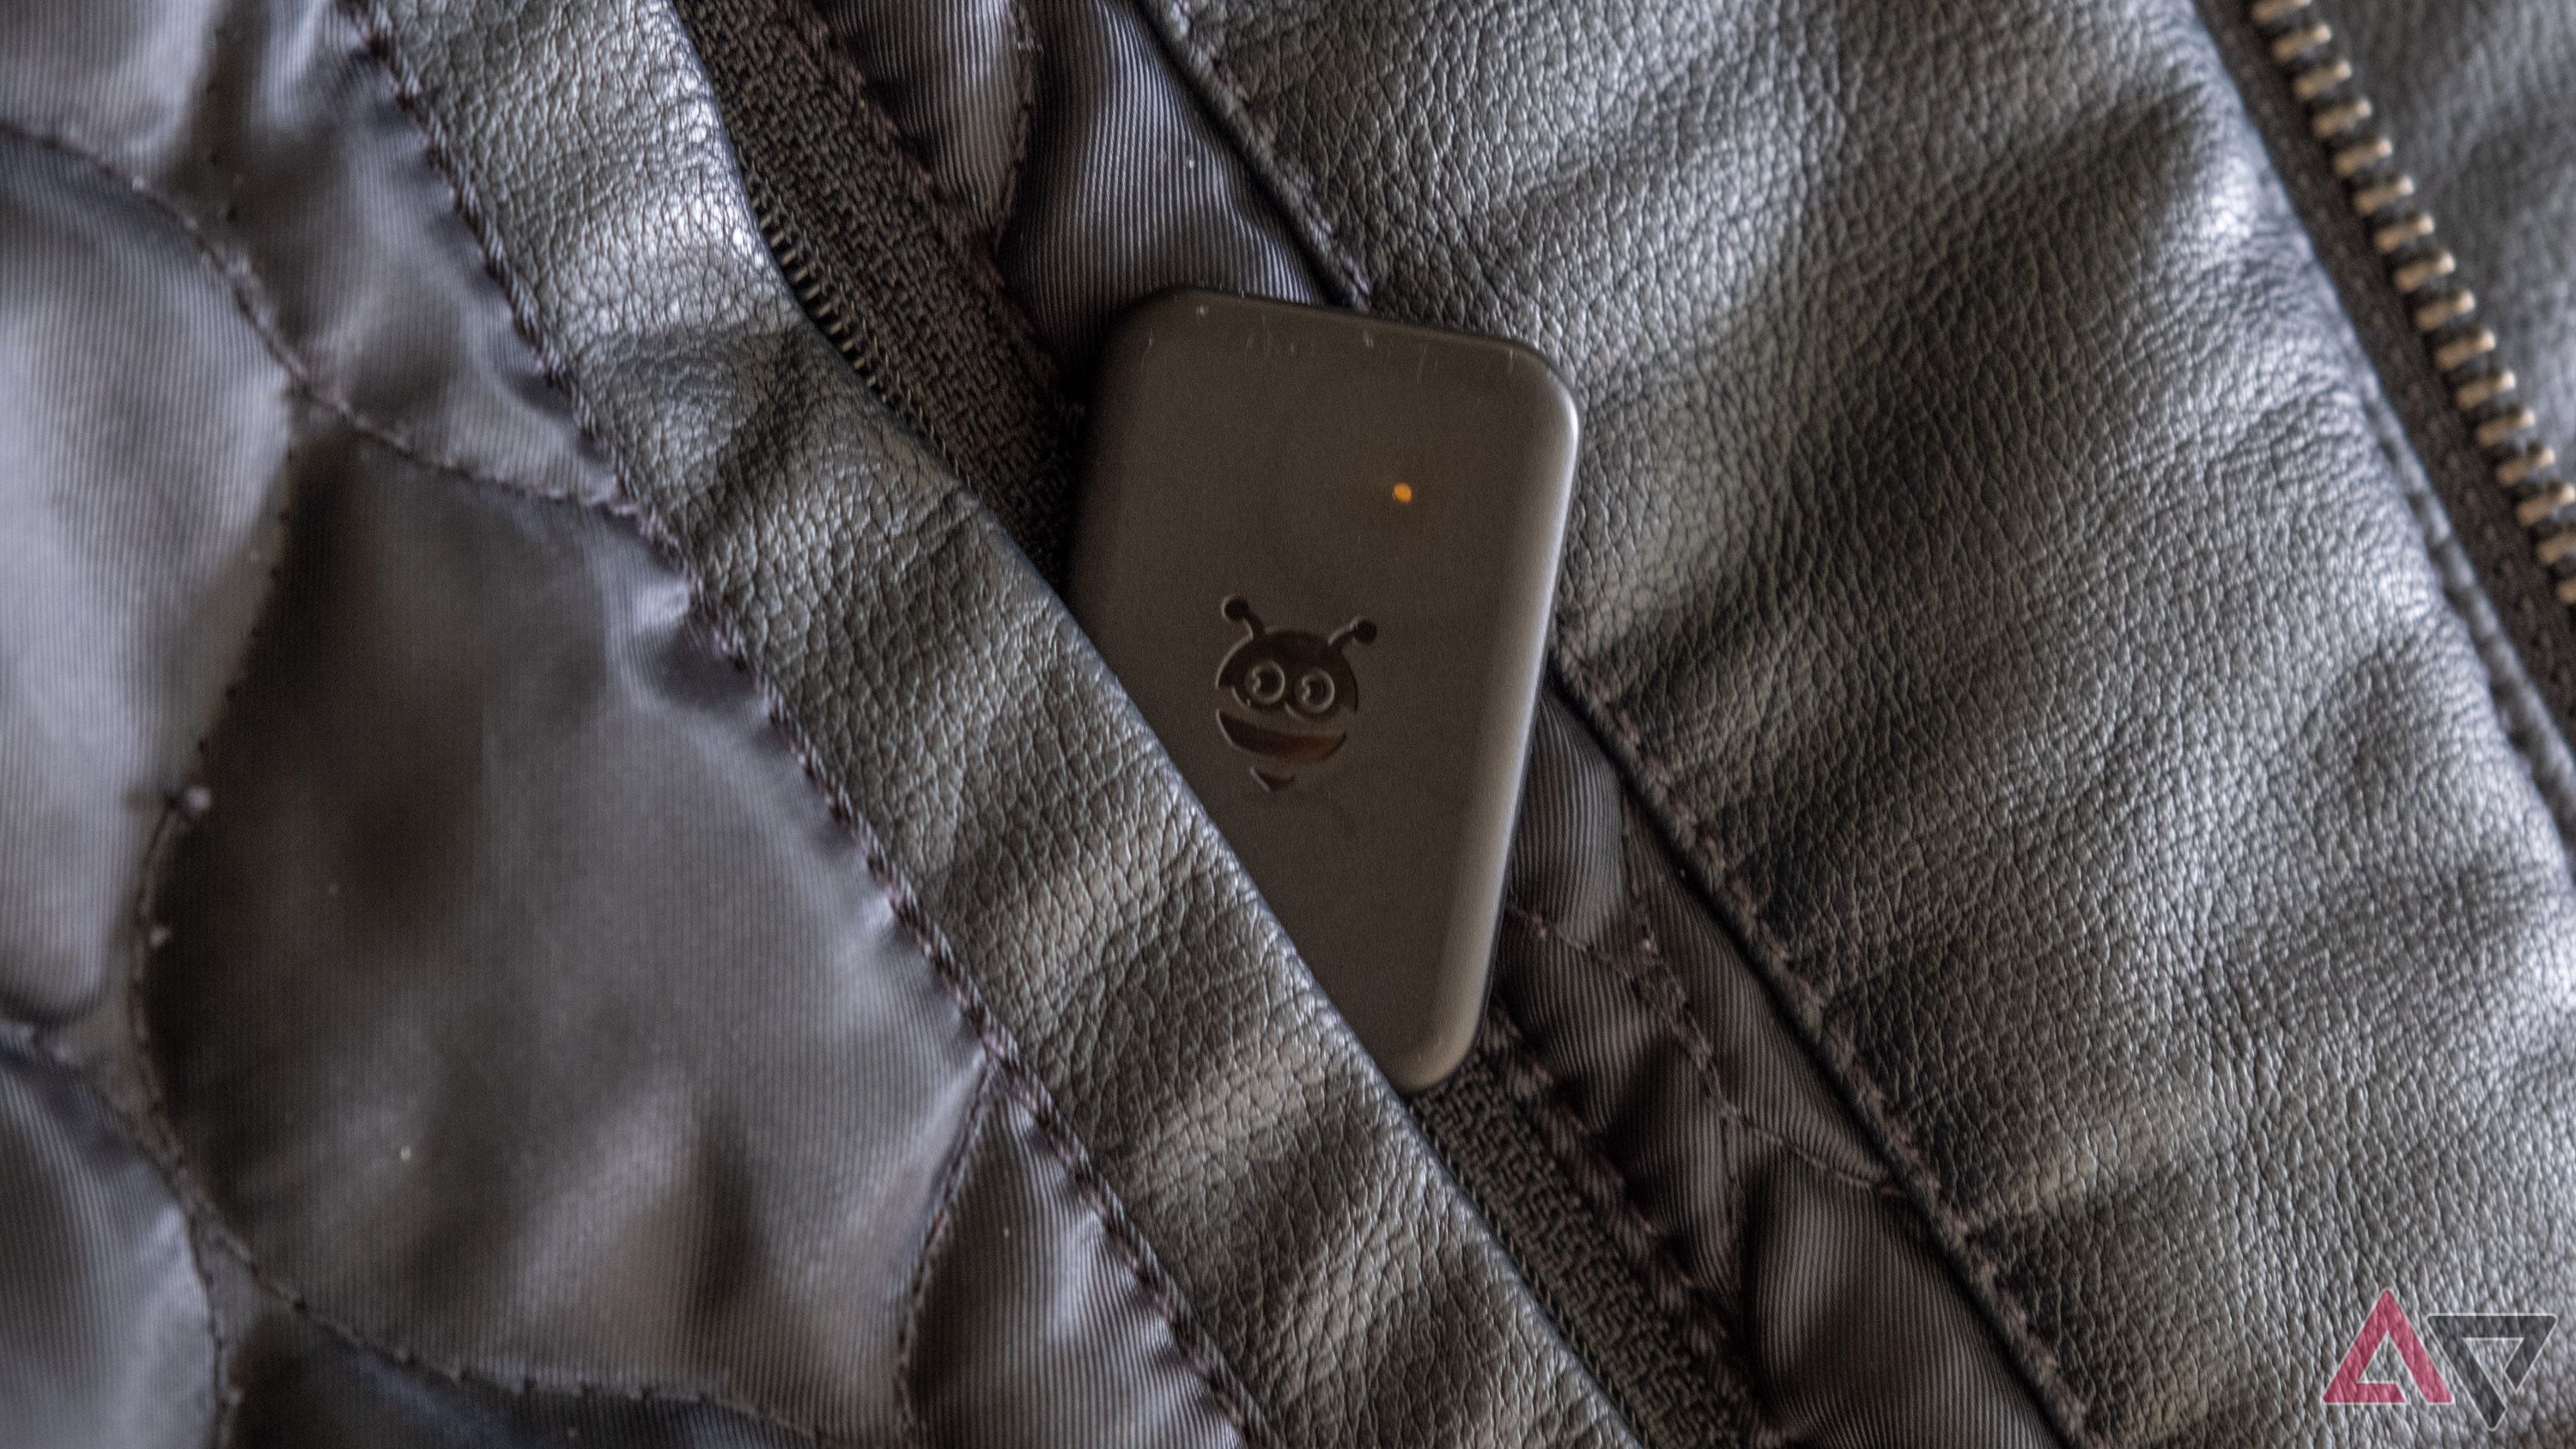 Uma etiqueta Pebblebee saindo do bolso interno da jaqueta.